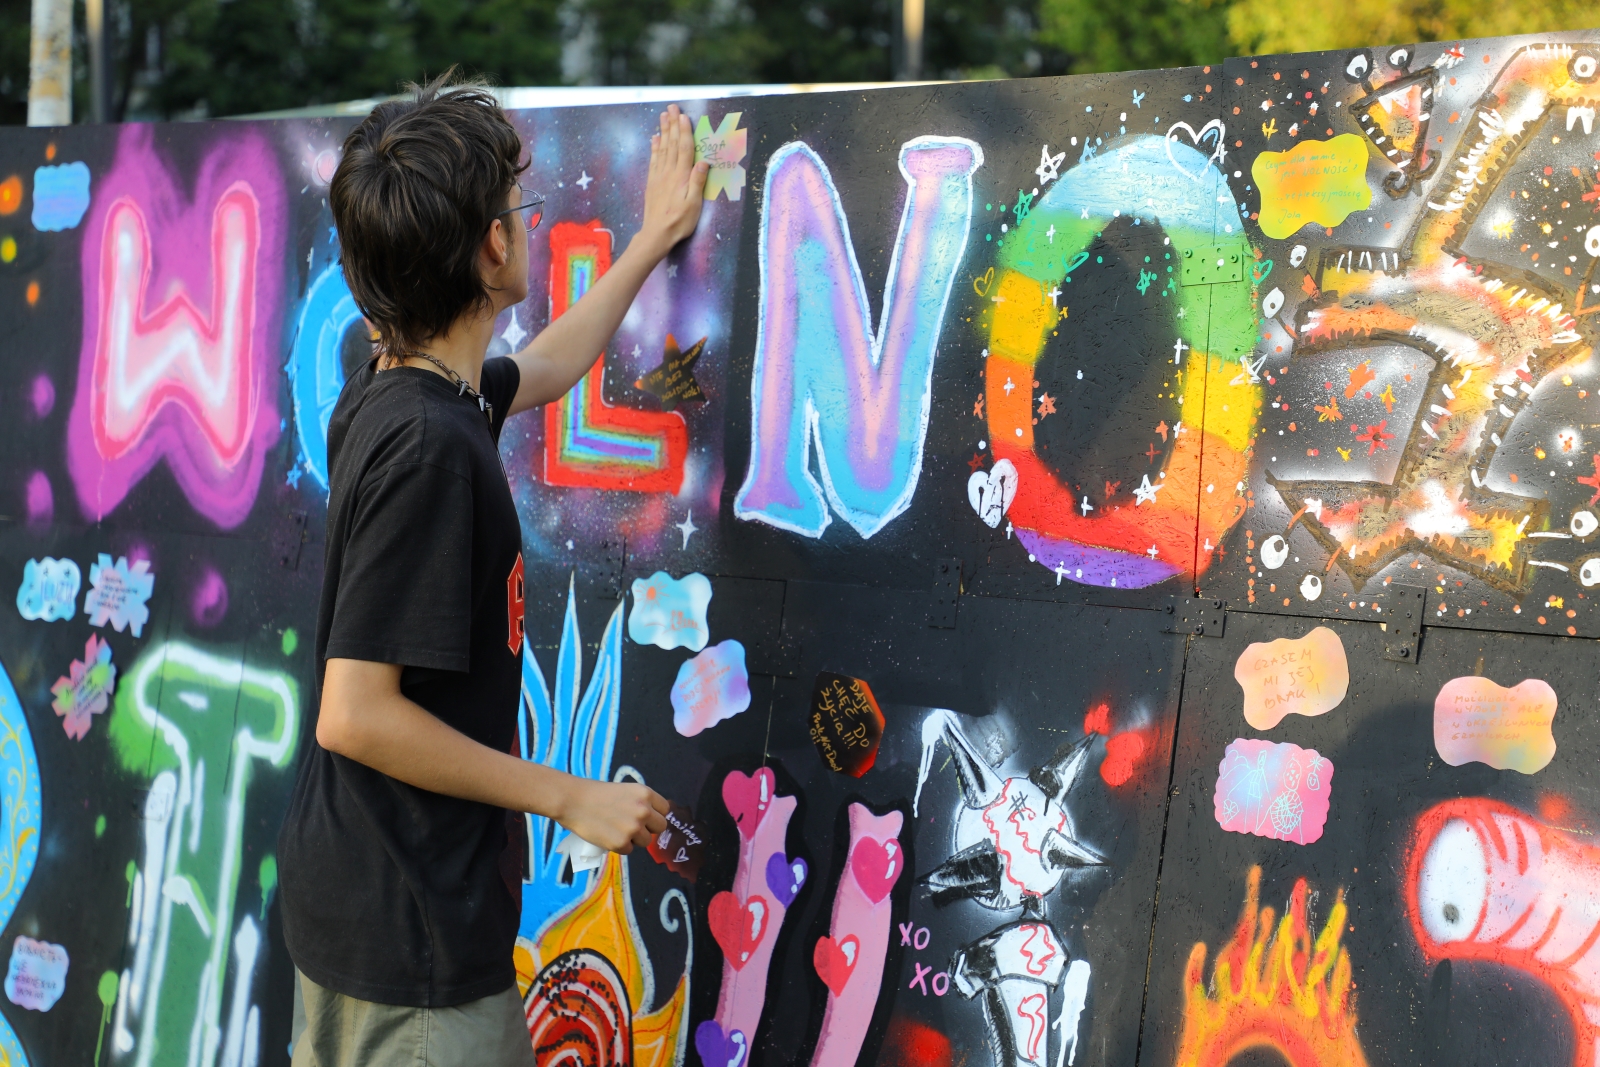 Chłopak trzyma dłoń na muralu z kolorowym napisem wolność.